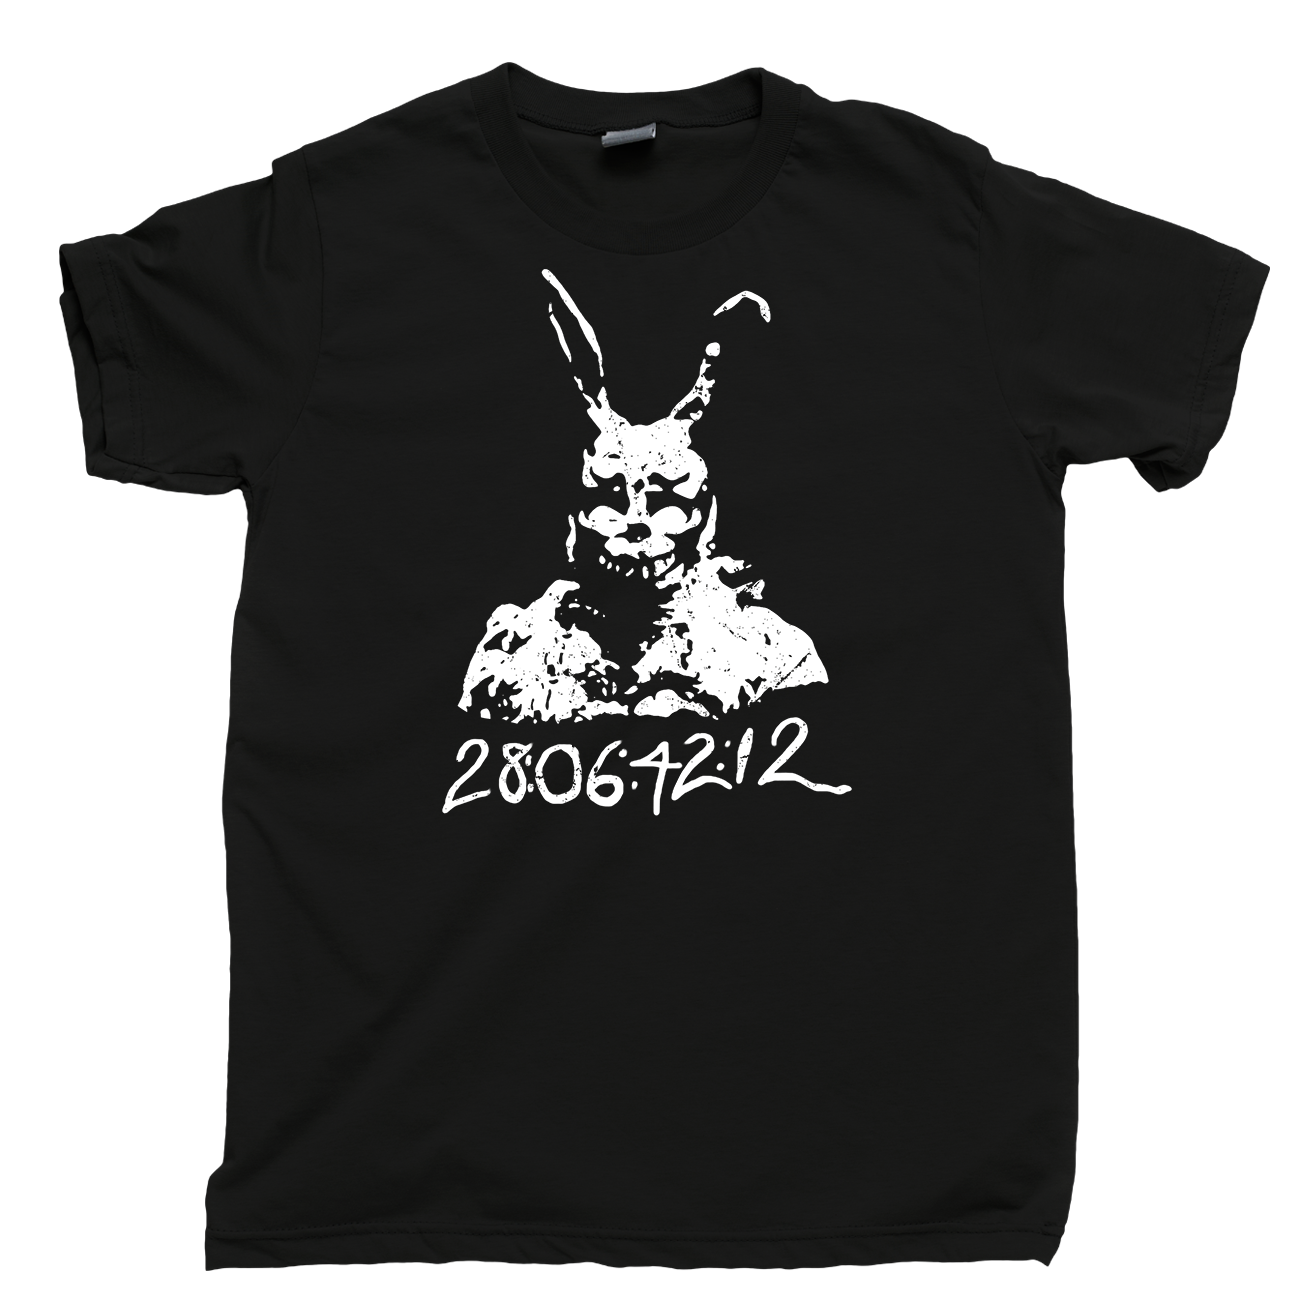 Donnie Darko T Shirt, Frank Bunny Rabbit Suit Time Travel Men's Cotton ...